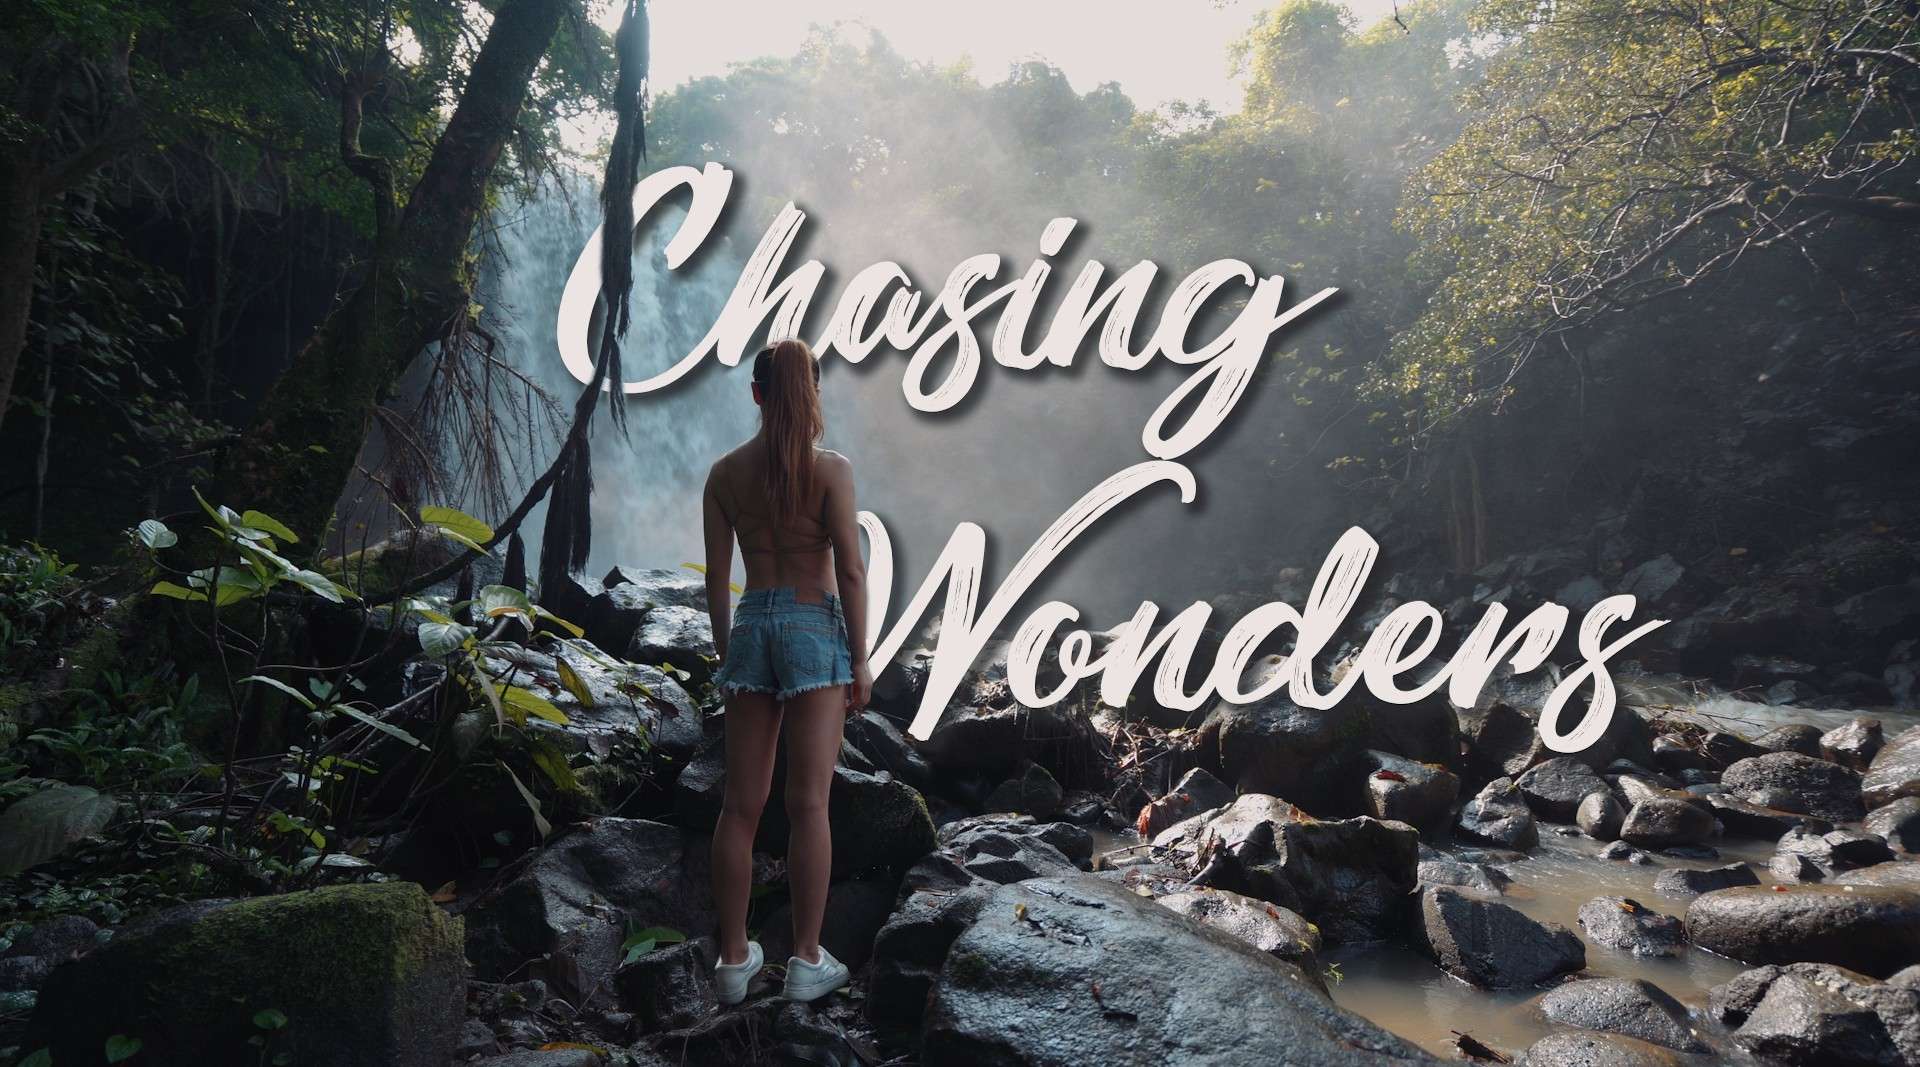 海南旅拍 | Chasing Wonders ——去追寻、去看见